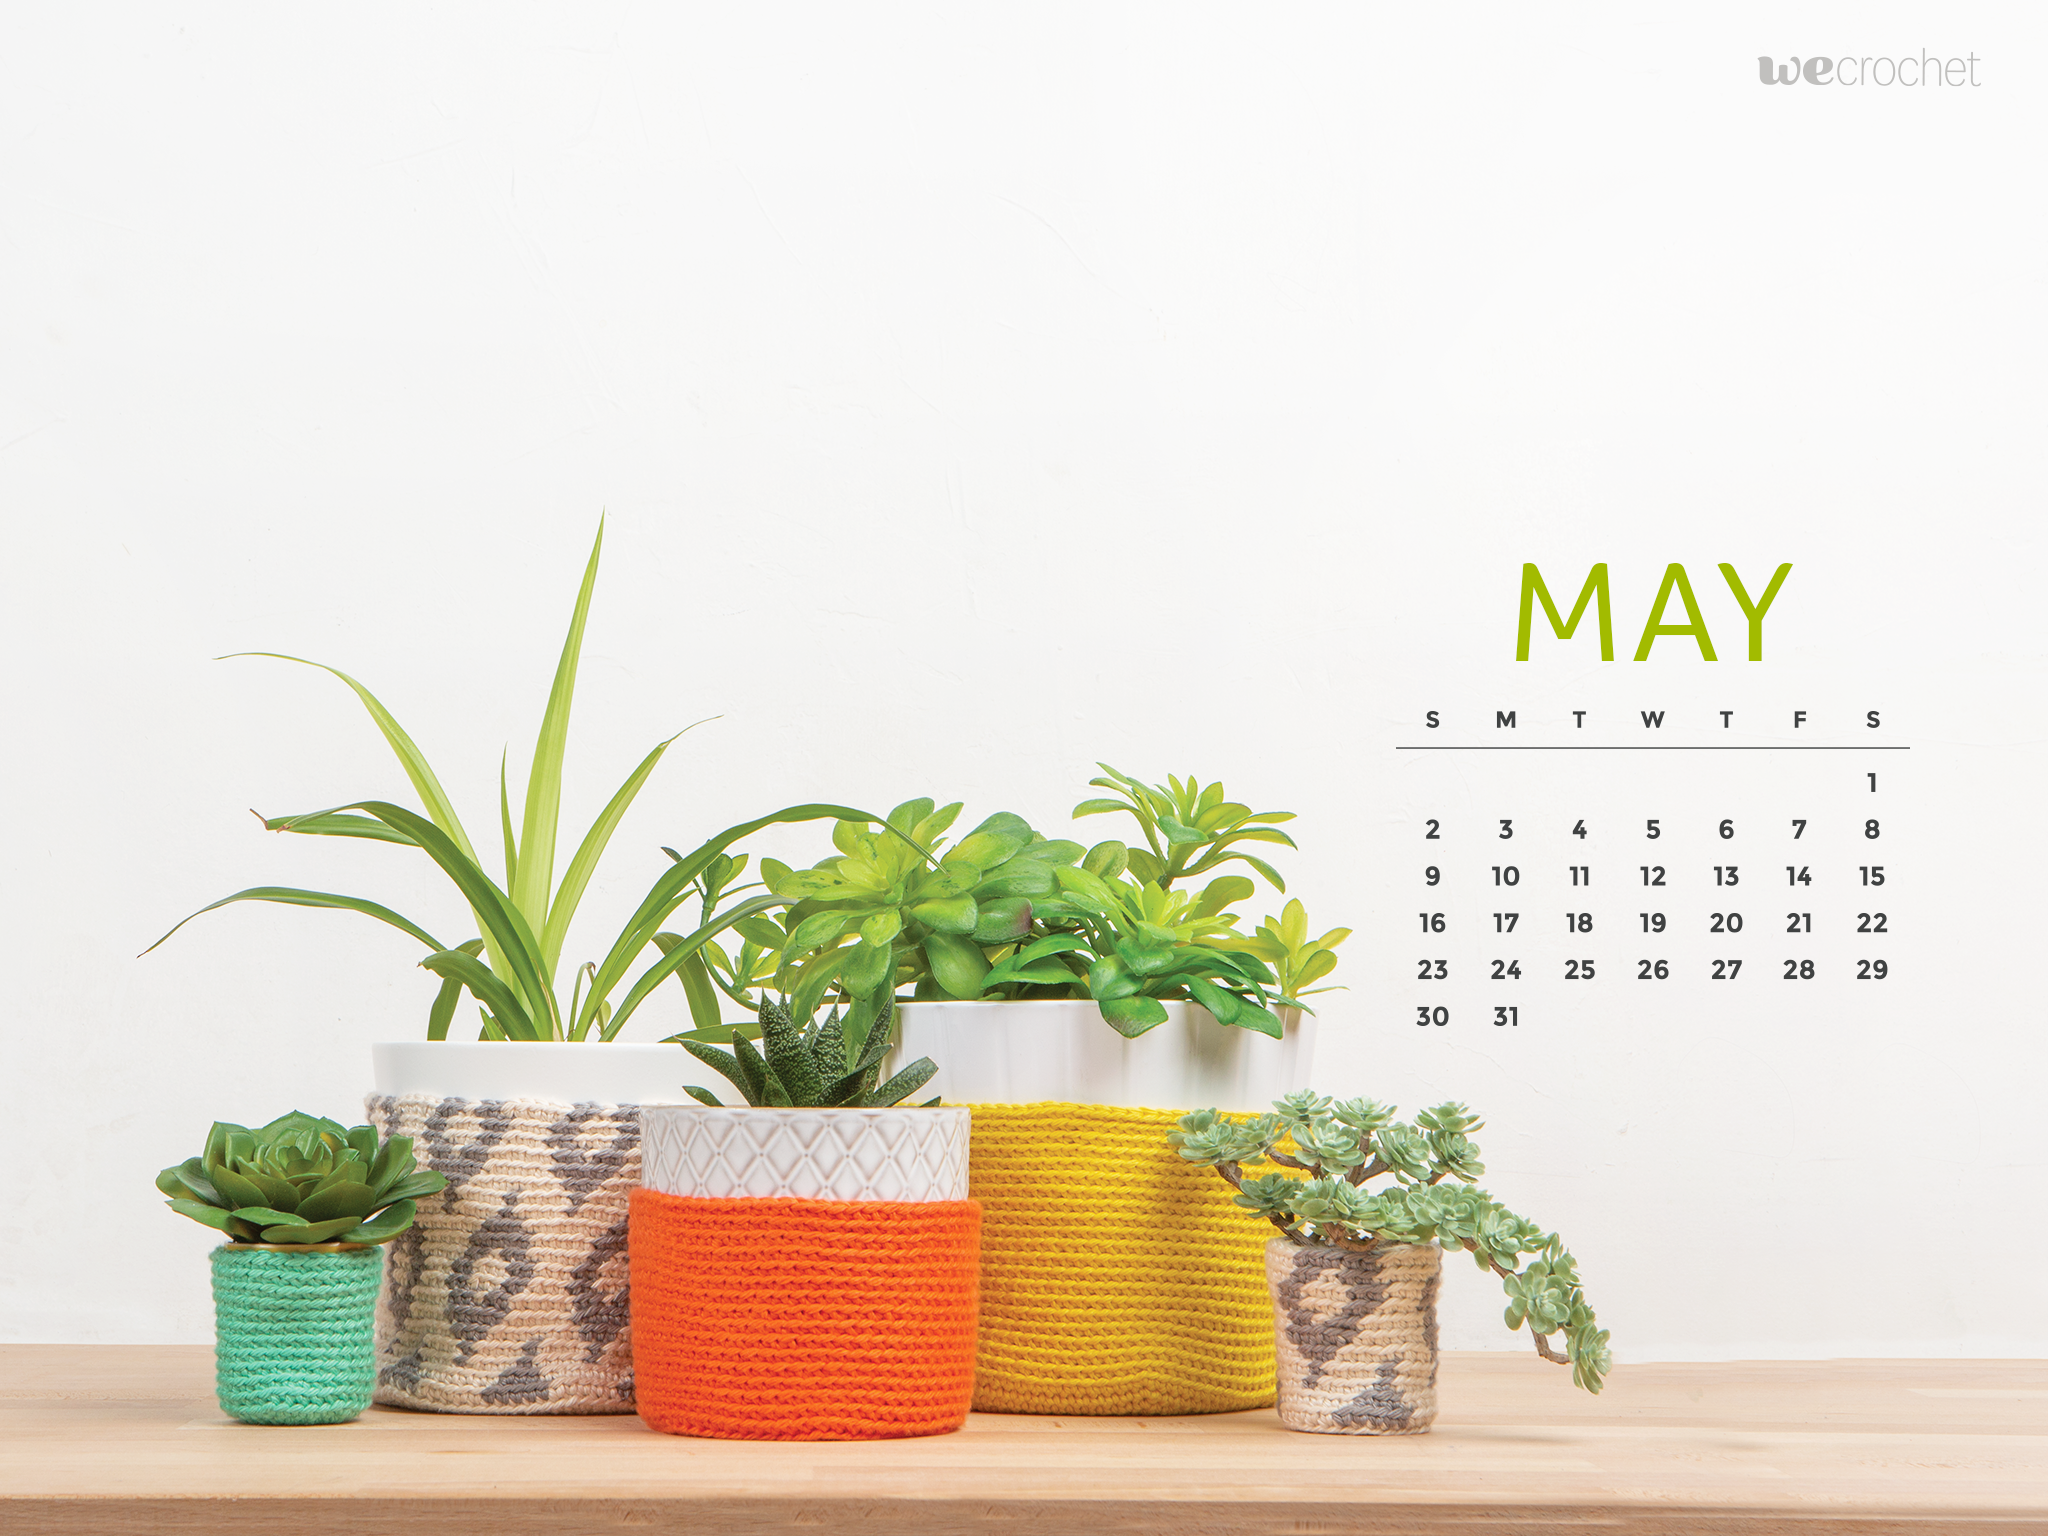 Free Download May 21 Calendar Wallpaper Wecrochet Staff Blog